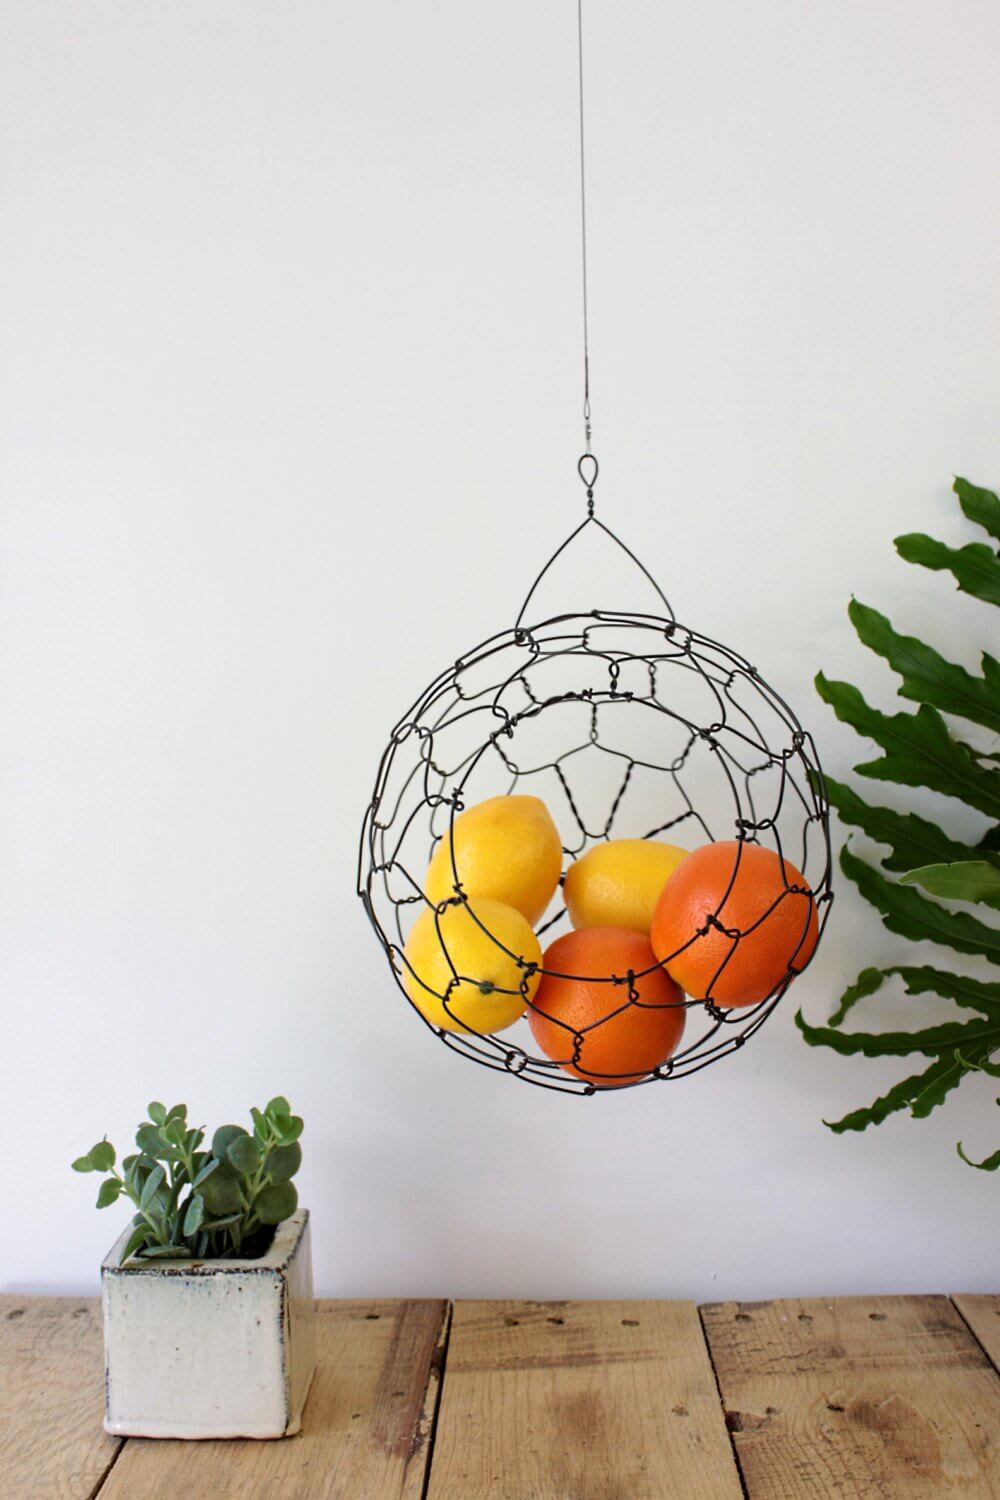 The Hanging Tree Fruit Basket